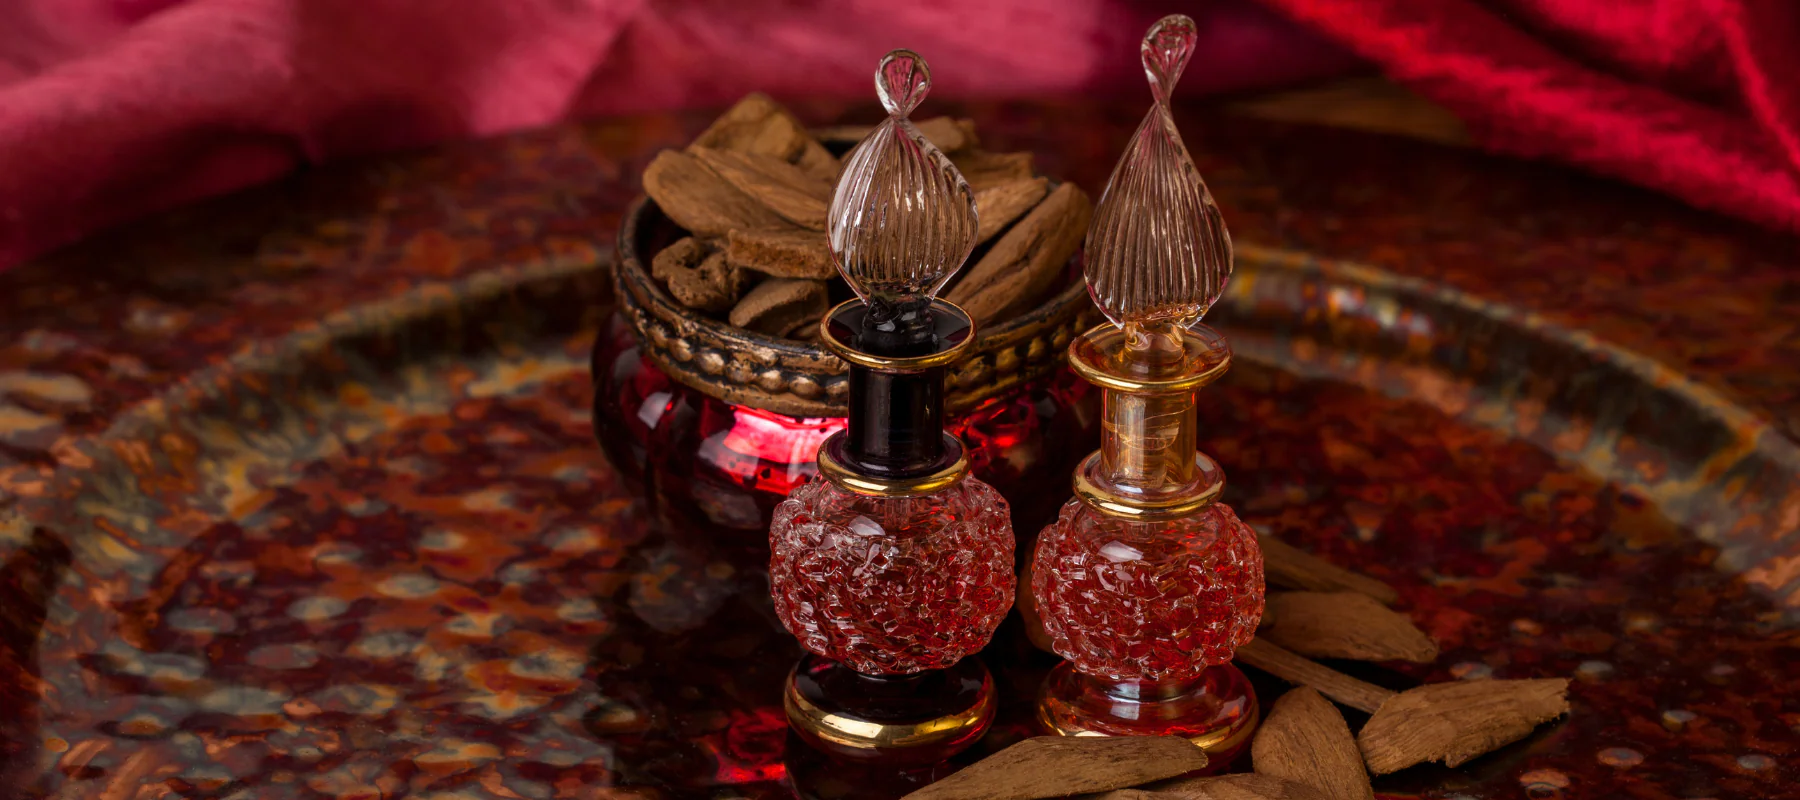 Tinh dầu trầm hương – 19 lợi ích tuyệt vời cho người sử dụng (P2)